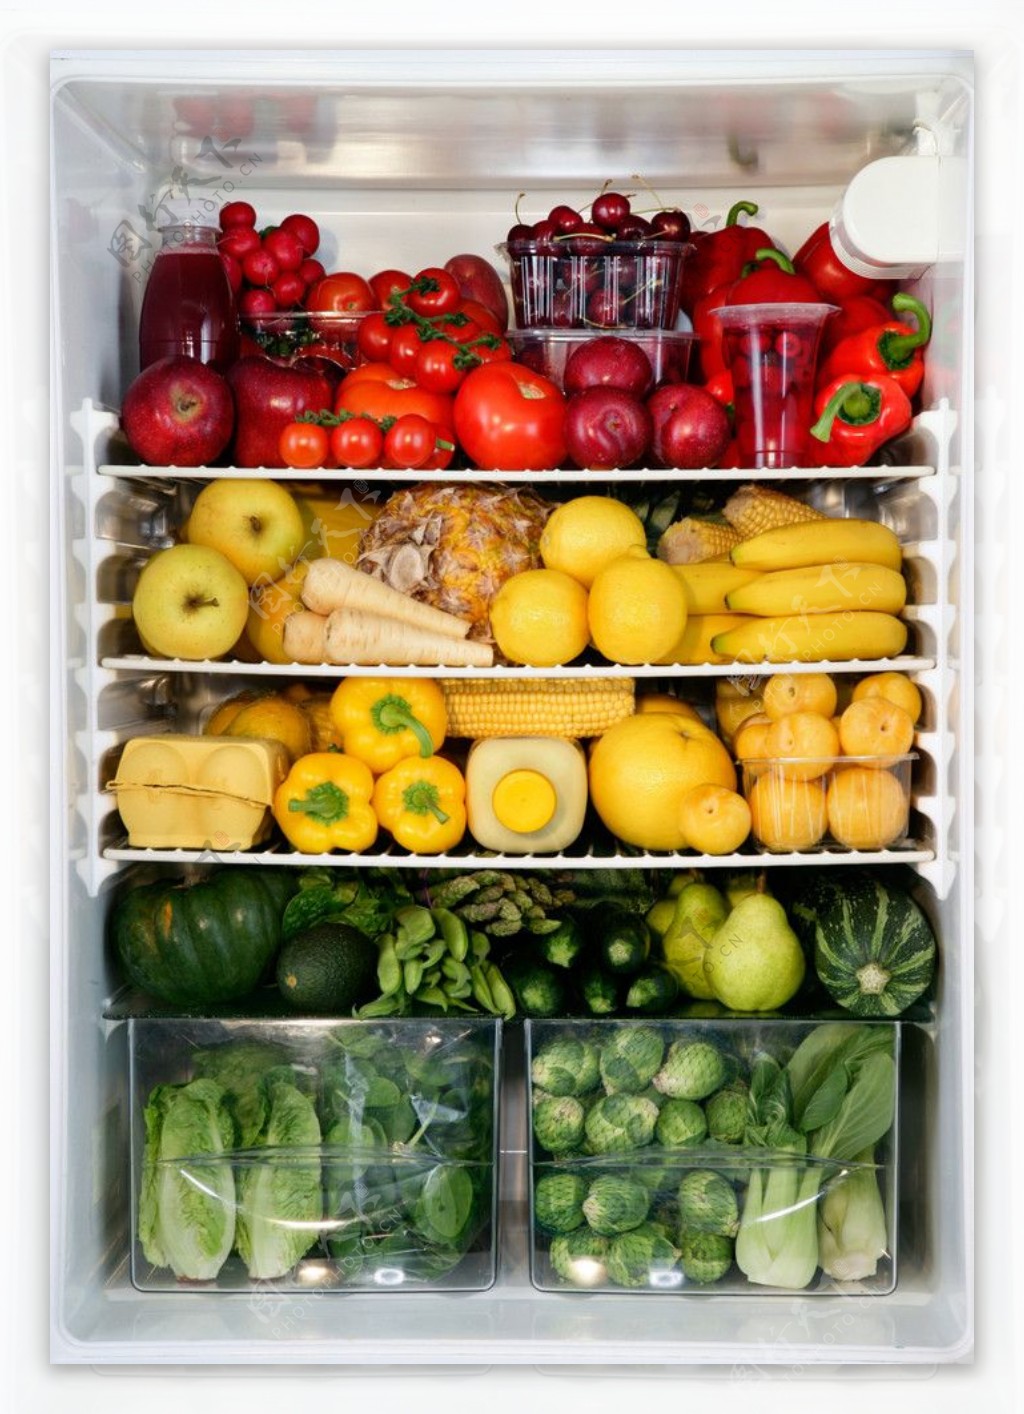 冰箱里的水果图片